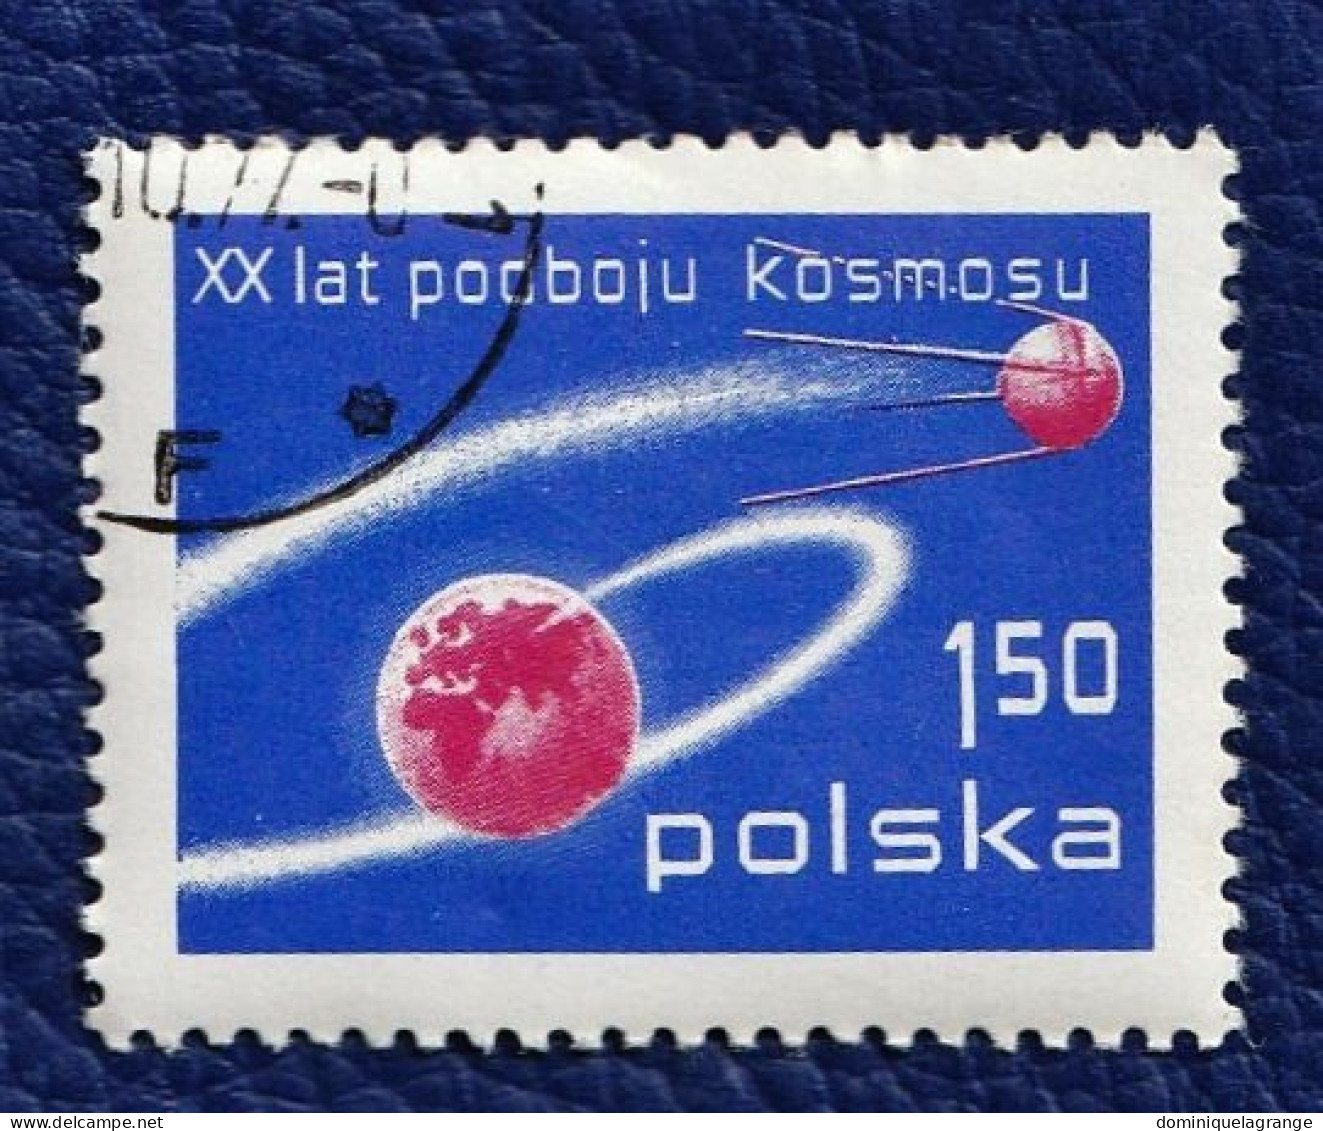 10 timbres de Pologne "animaux" et "symboles" de 1973 à 1985